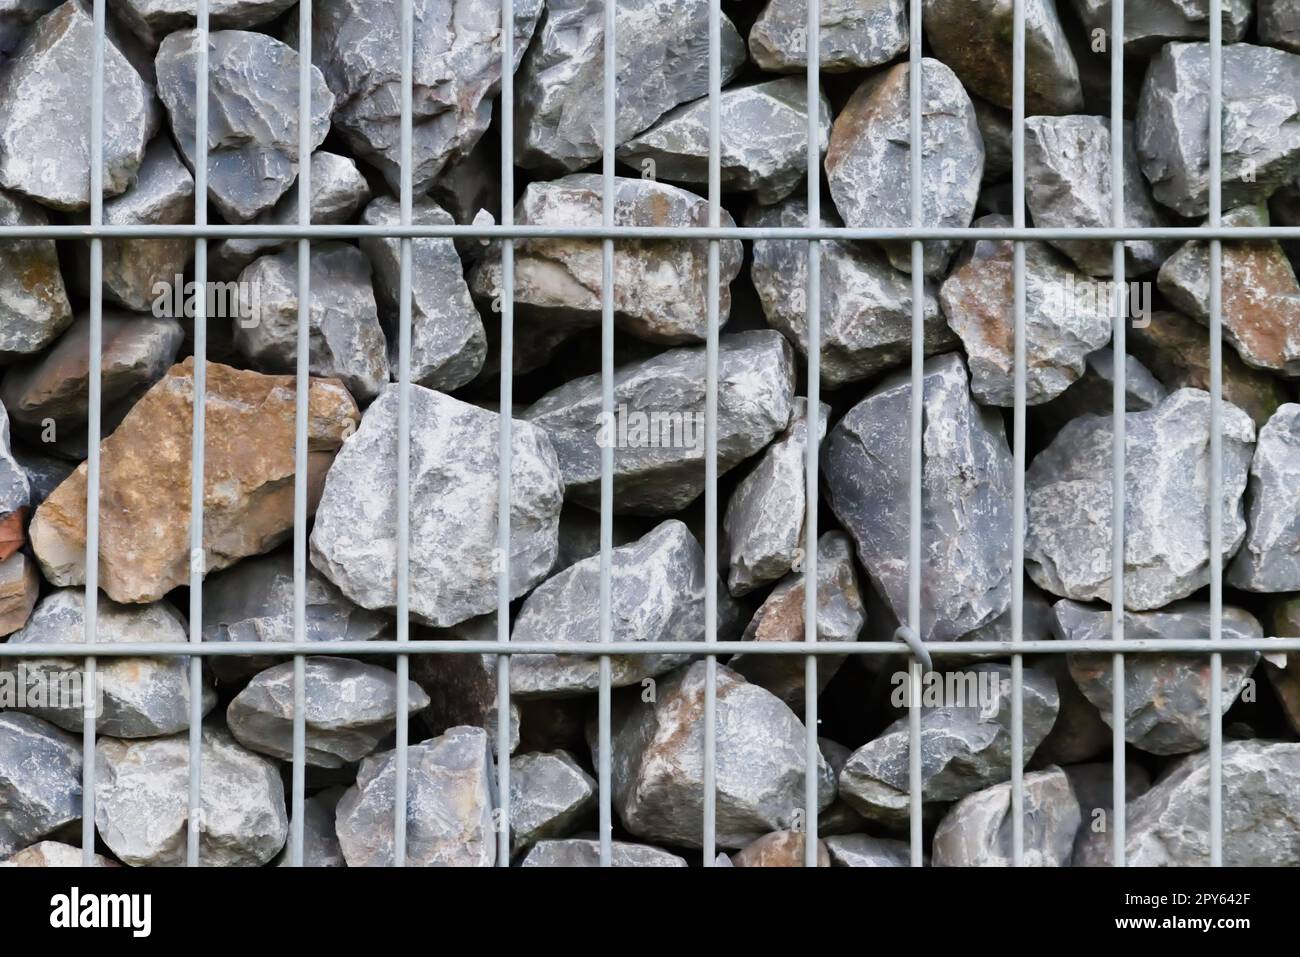 Il bordo delle rocce grezze e le pareti in pietra grigia fanno da sfondo a pietre naturali con materiale frantumato e grezzo impilato nella griglia metallica come massiccio bordo in colori grigi come sfondo minerale naturale per i giardini Foto Stock